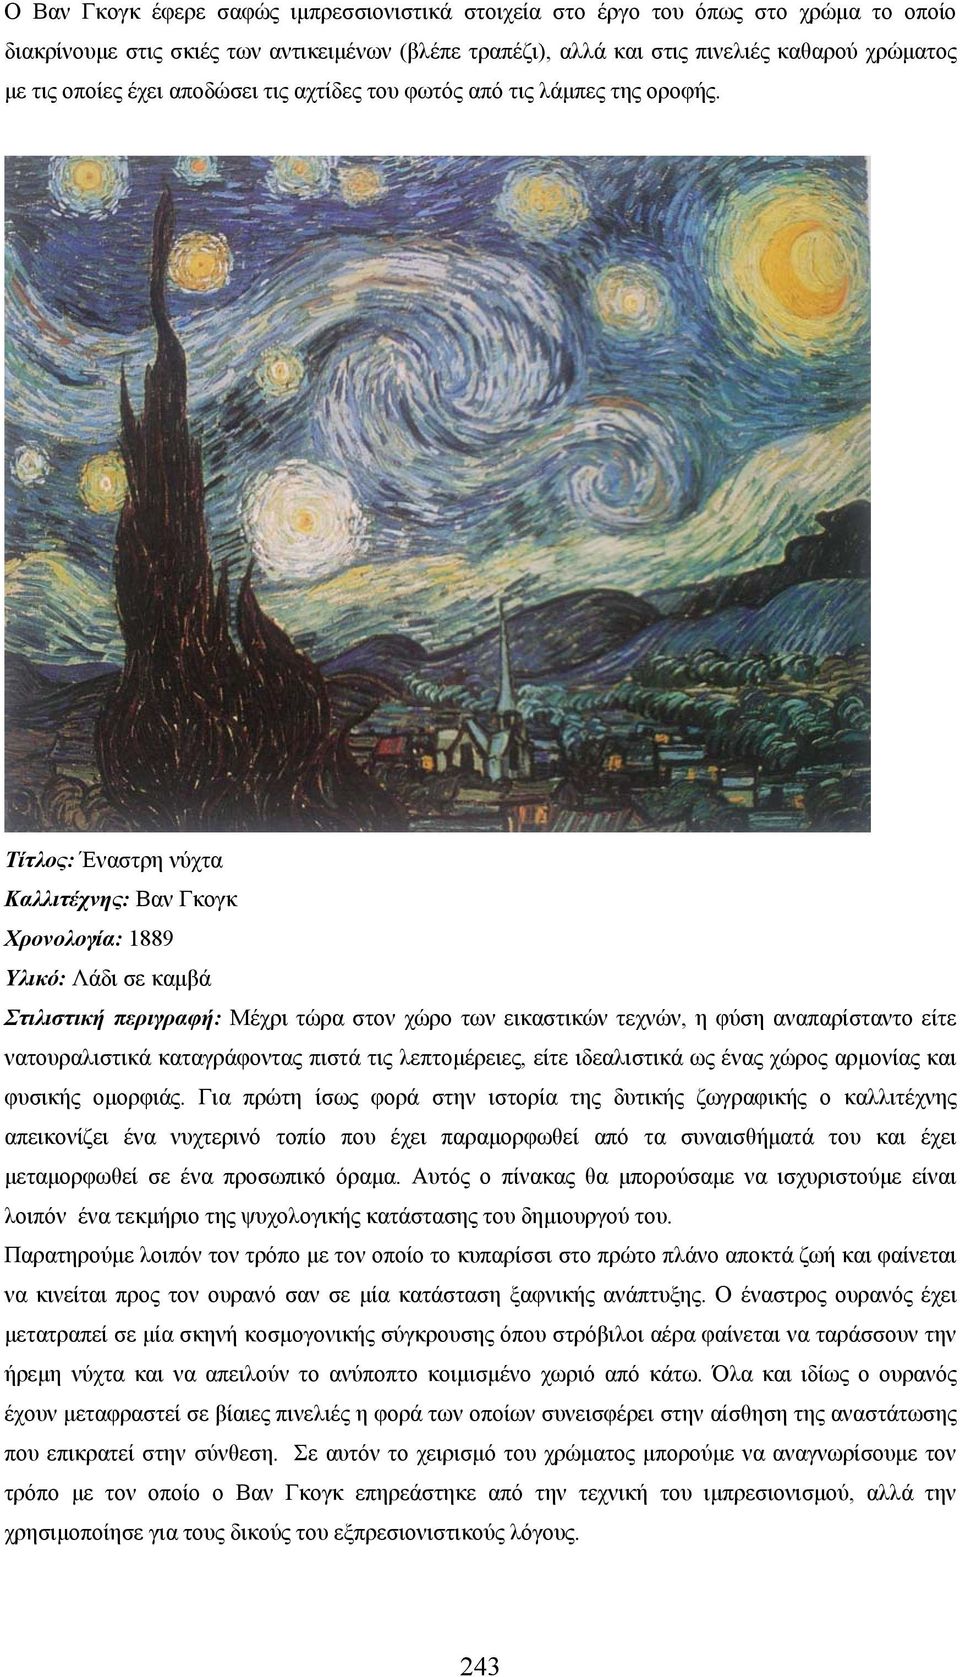 Τίτλος: Έναστρη νύχτα Καλλιτέχνης: Βαν Γκογκ Χρονολογία: 1889 Υλικό: Λάδι σε καμβά Στιλιστική περιγραφή: Μέχρι τώρα στον χώρο των εικαστικών τεχνών, η φύση αναπαρίσταντο είτε νατουραλιστικά